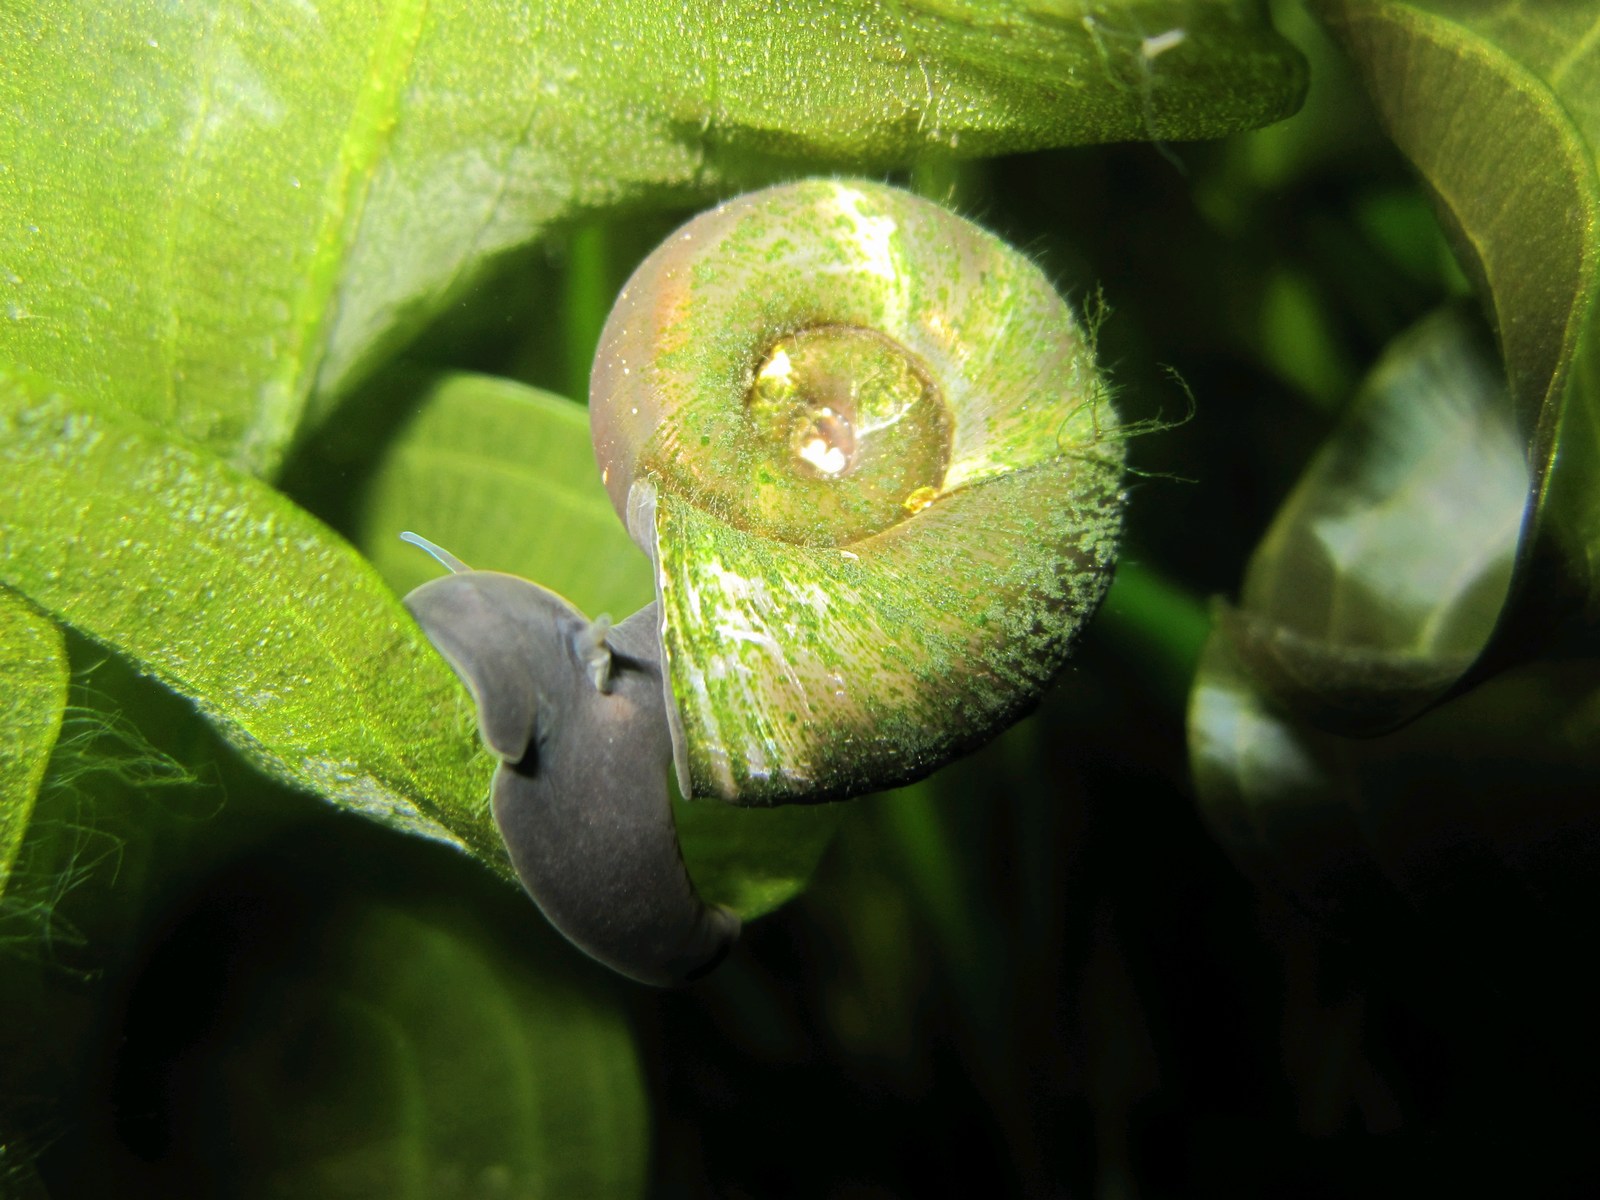 Ramshorn snails - Planorbis corn